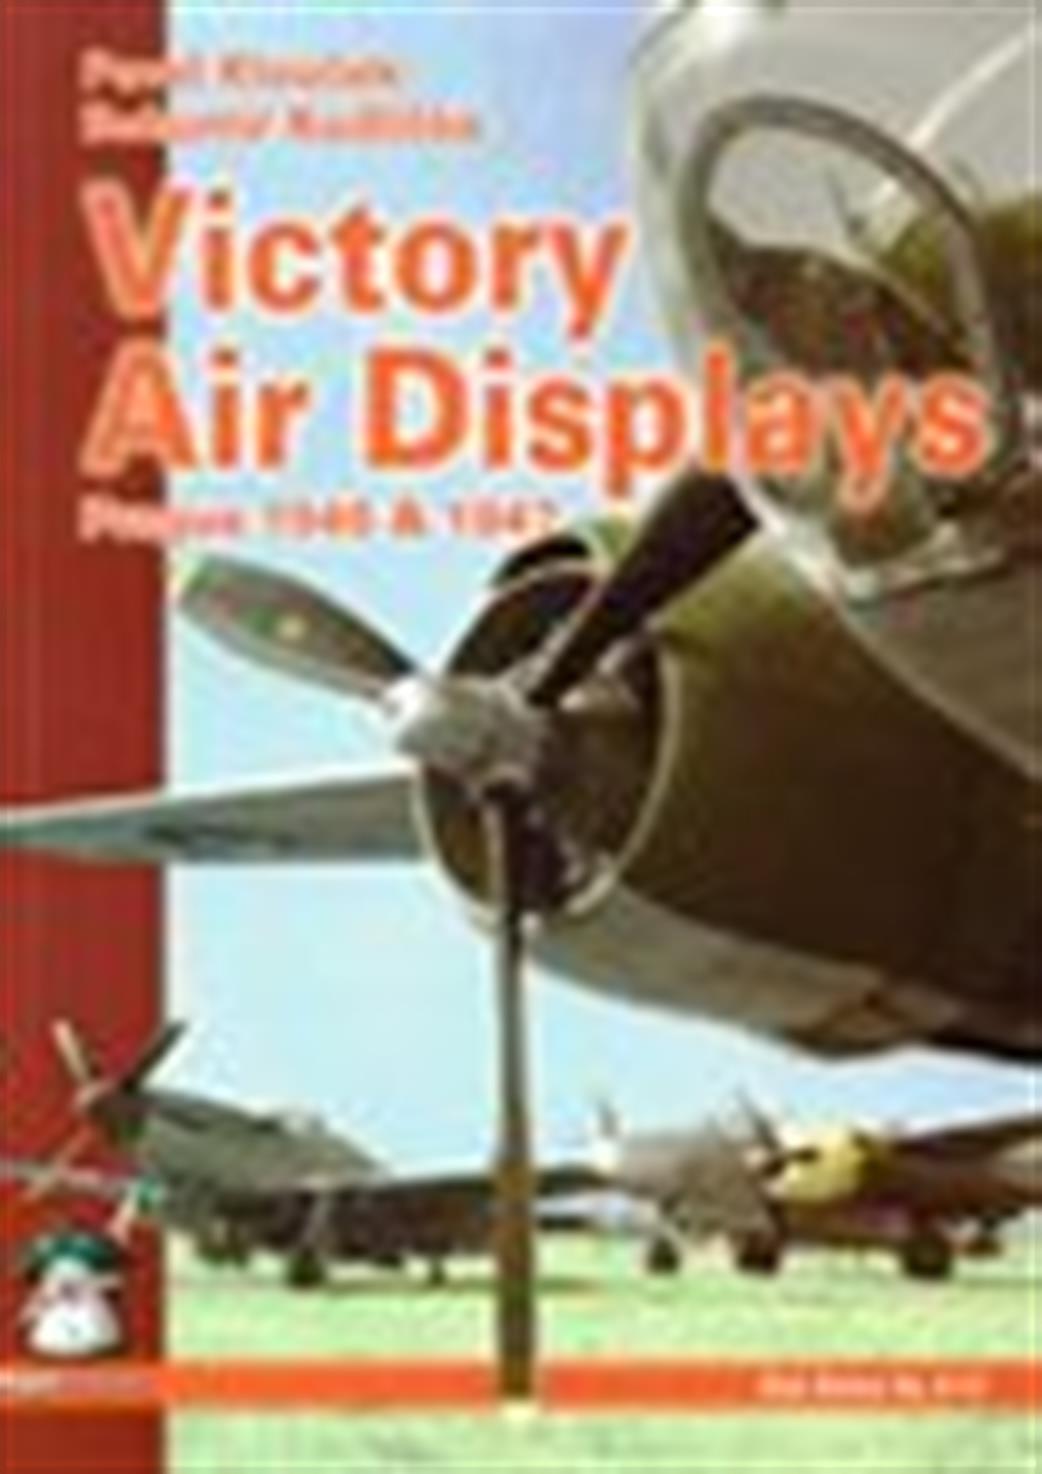 9788361421429 Victory Air Displays by Pavel Kloucek & Bohumir Kudlicka.